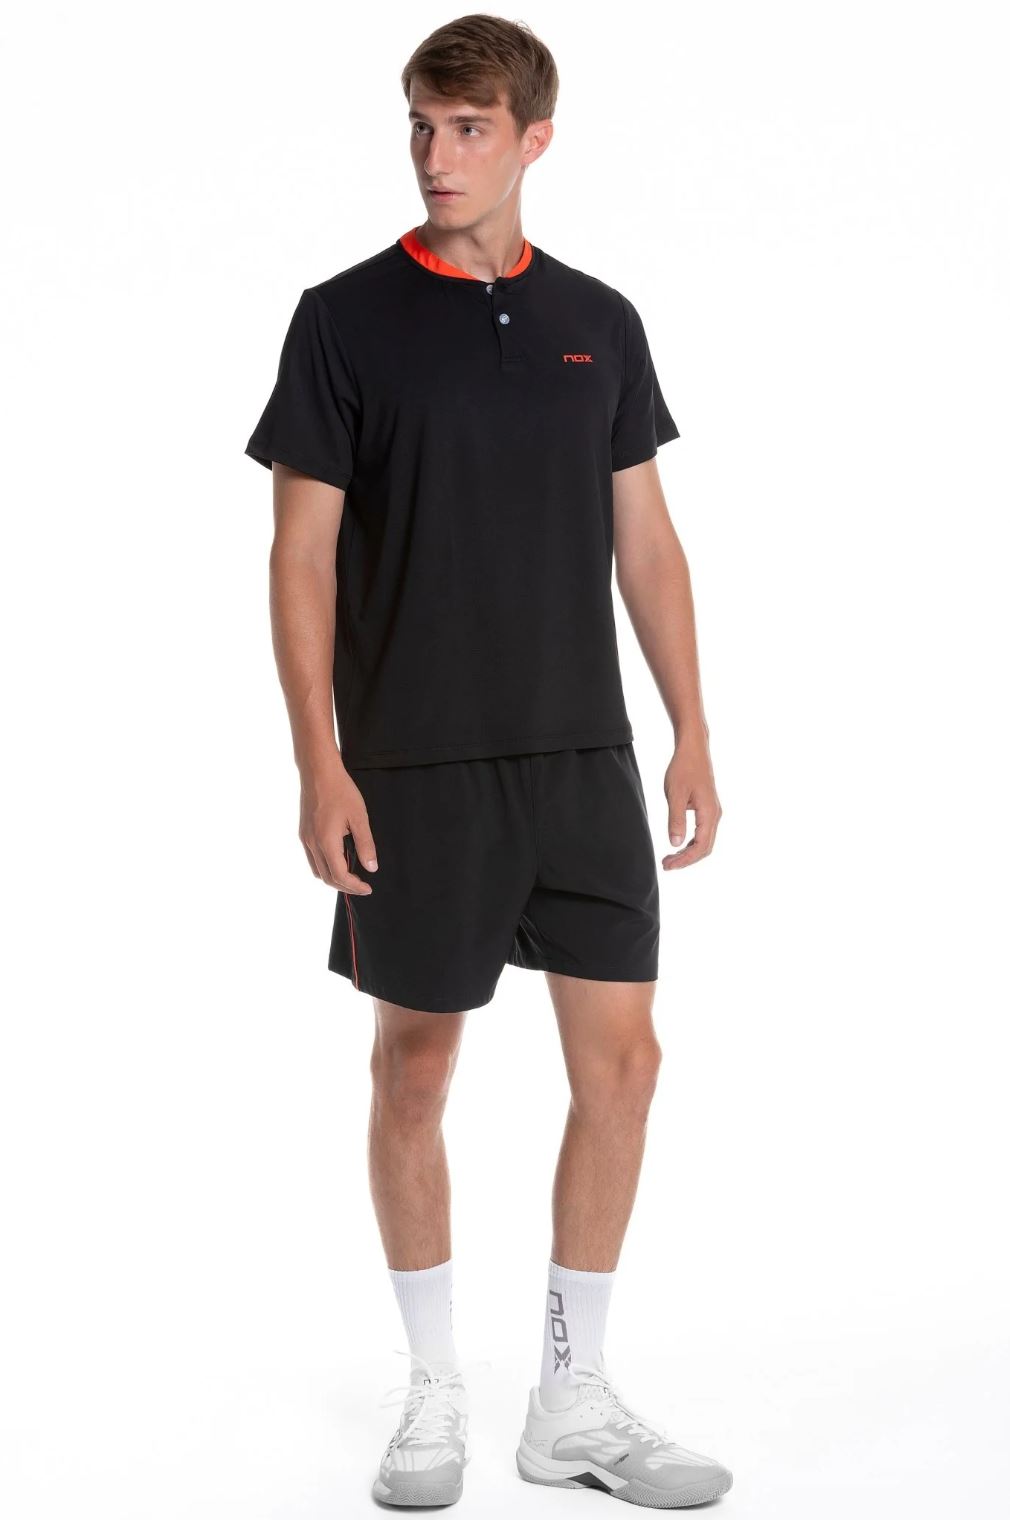 Nox Padel Shorts (Black)